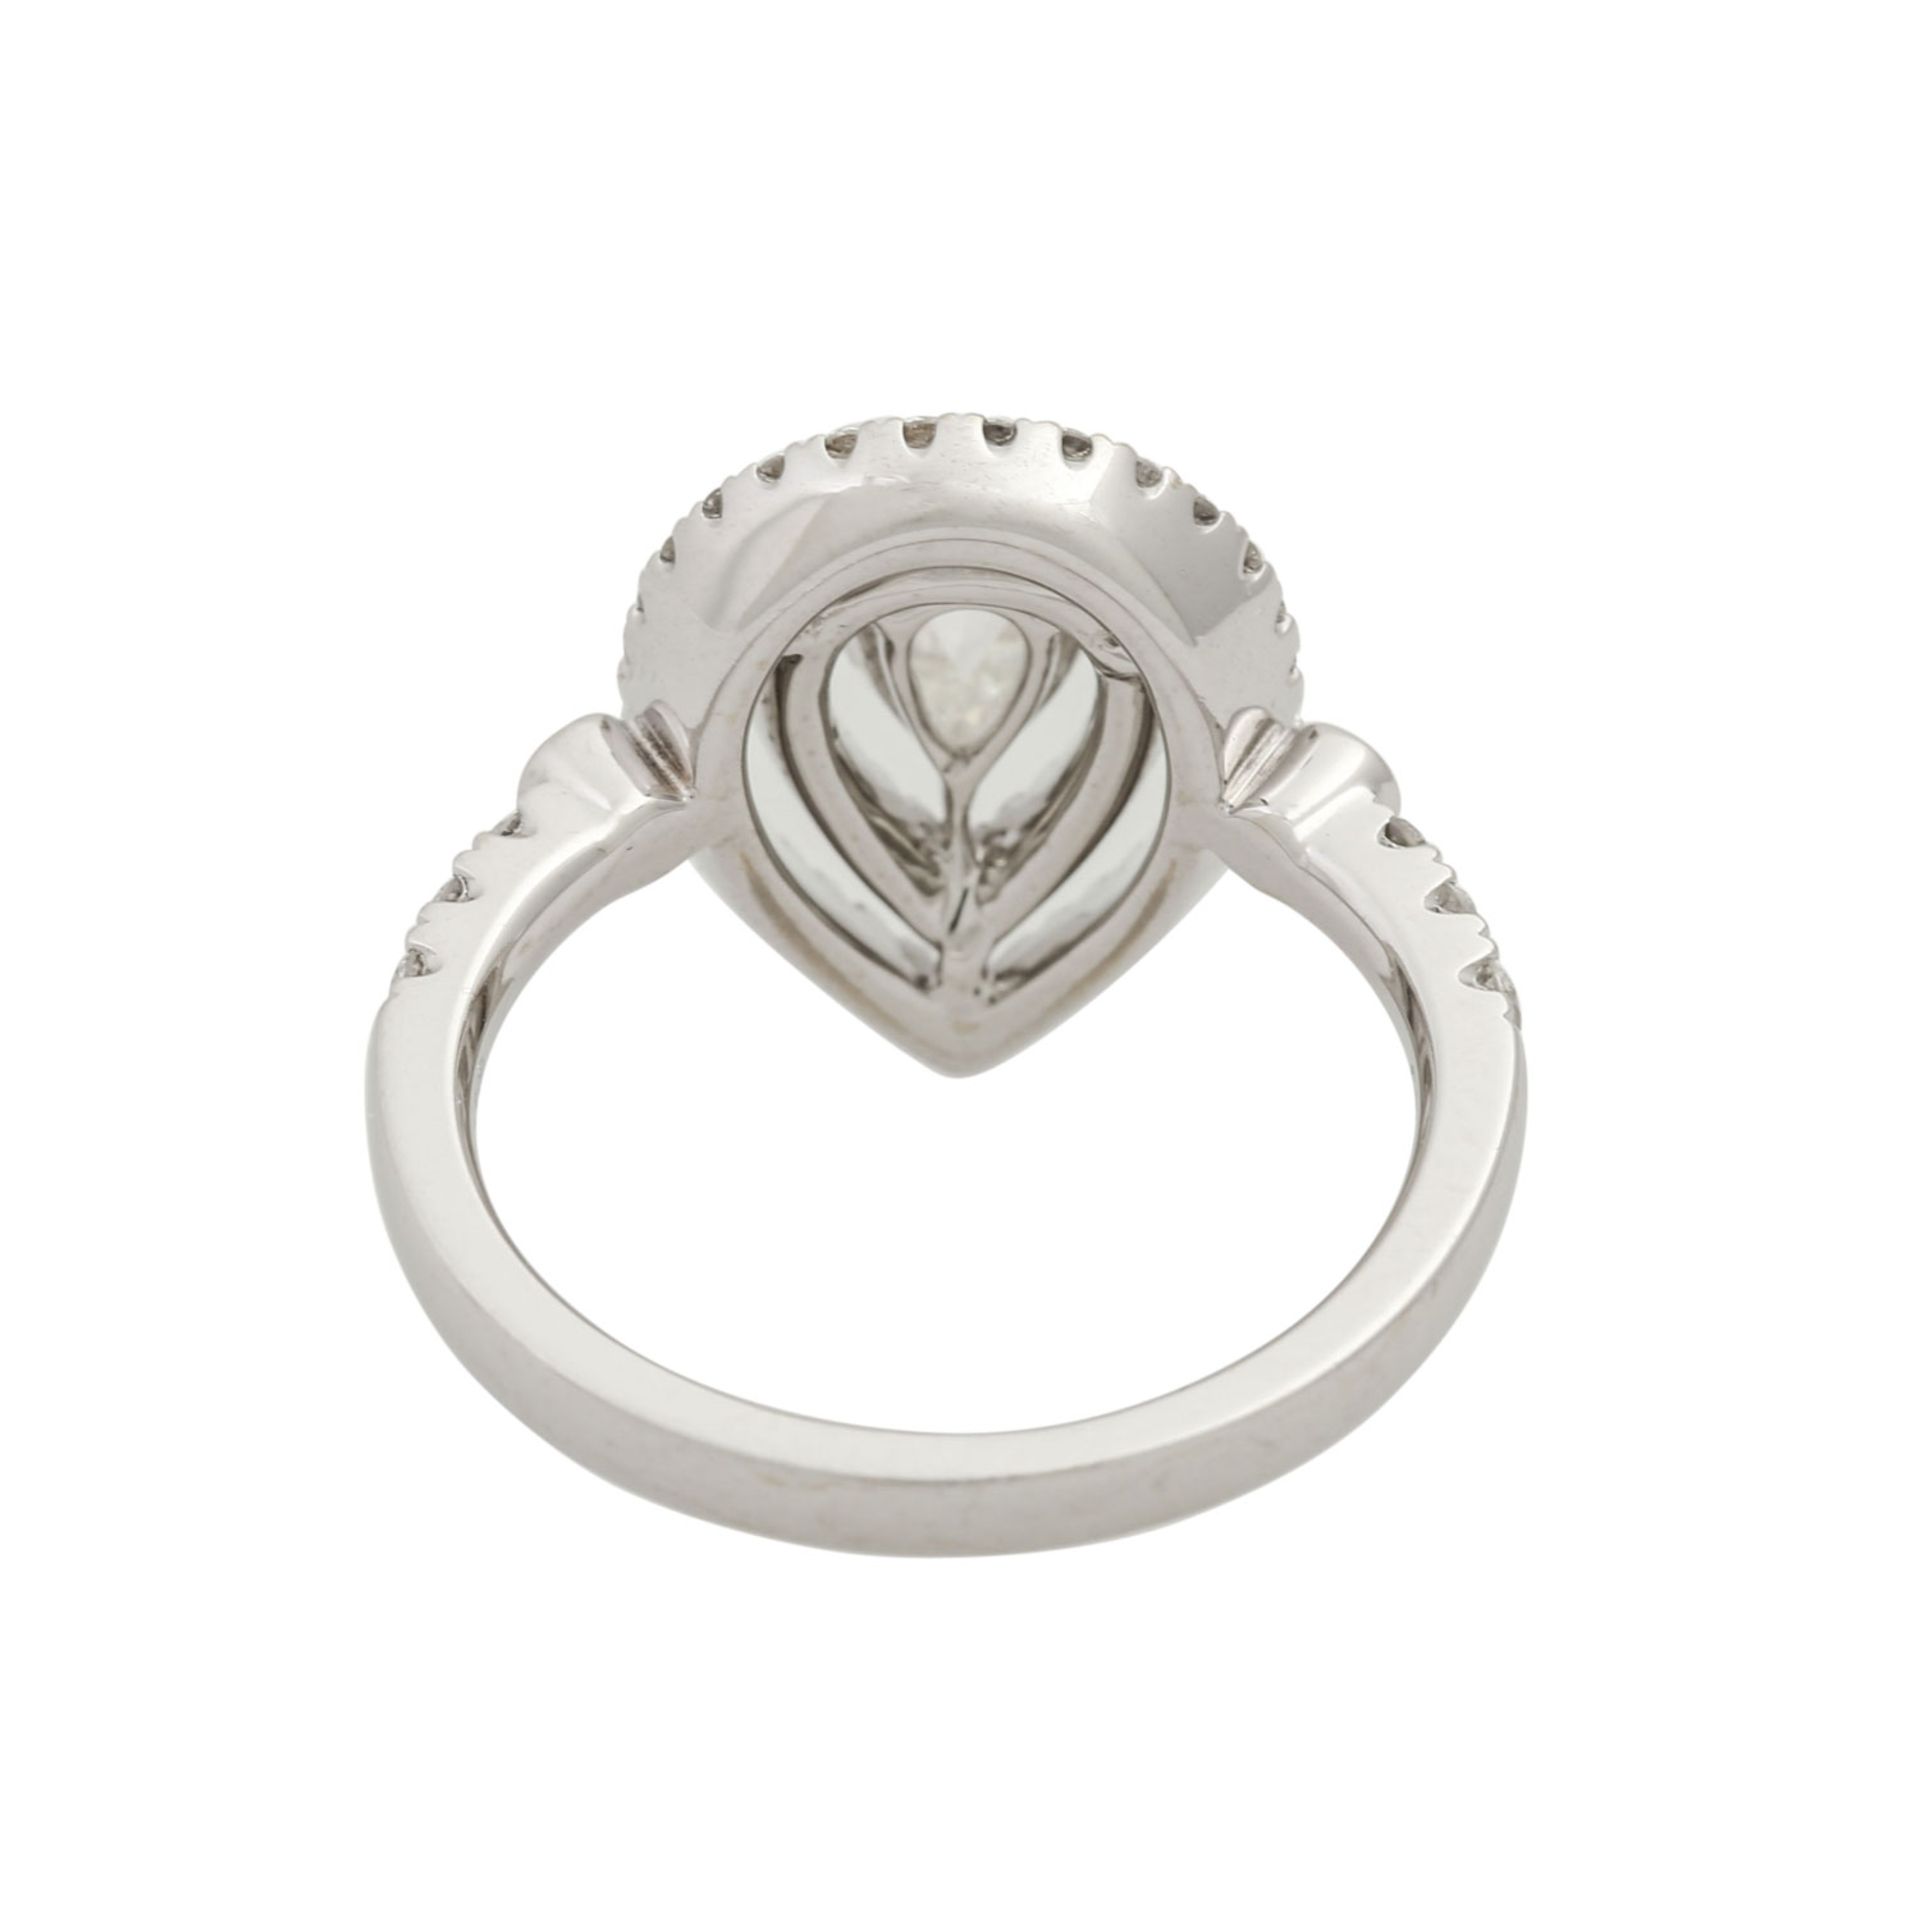 Ring mit Diamanttropfen ca. 0,71 ct,Rosenschliff, ca. LGW (I-J)/P1, weitere kleine Bri - Bild 3 aus 4